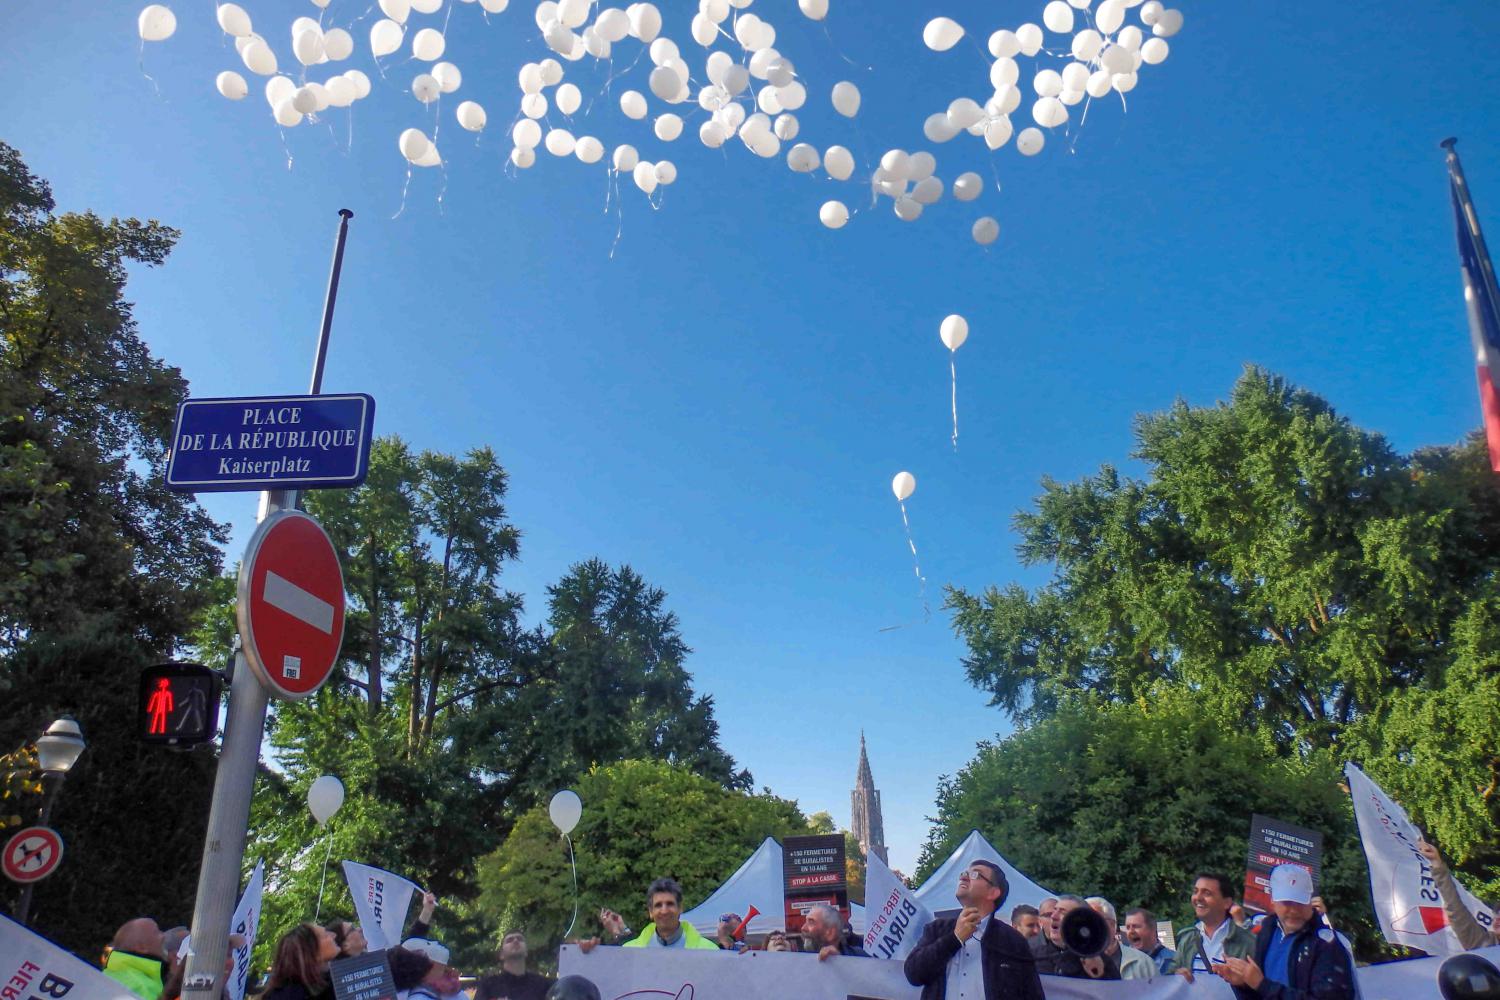 Un lâcher de 150 ballons, représentant les 150 buralistes qui ont fermé depuis 10 ans, a été effectué 